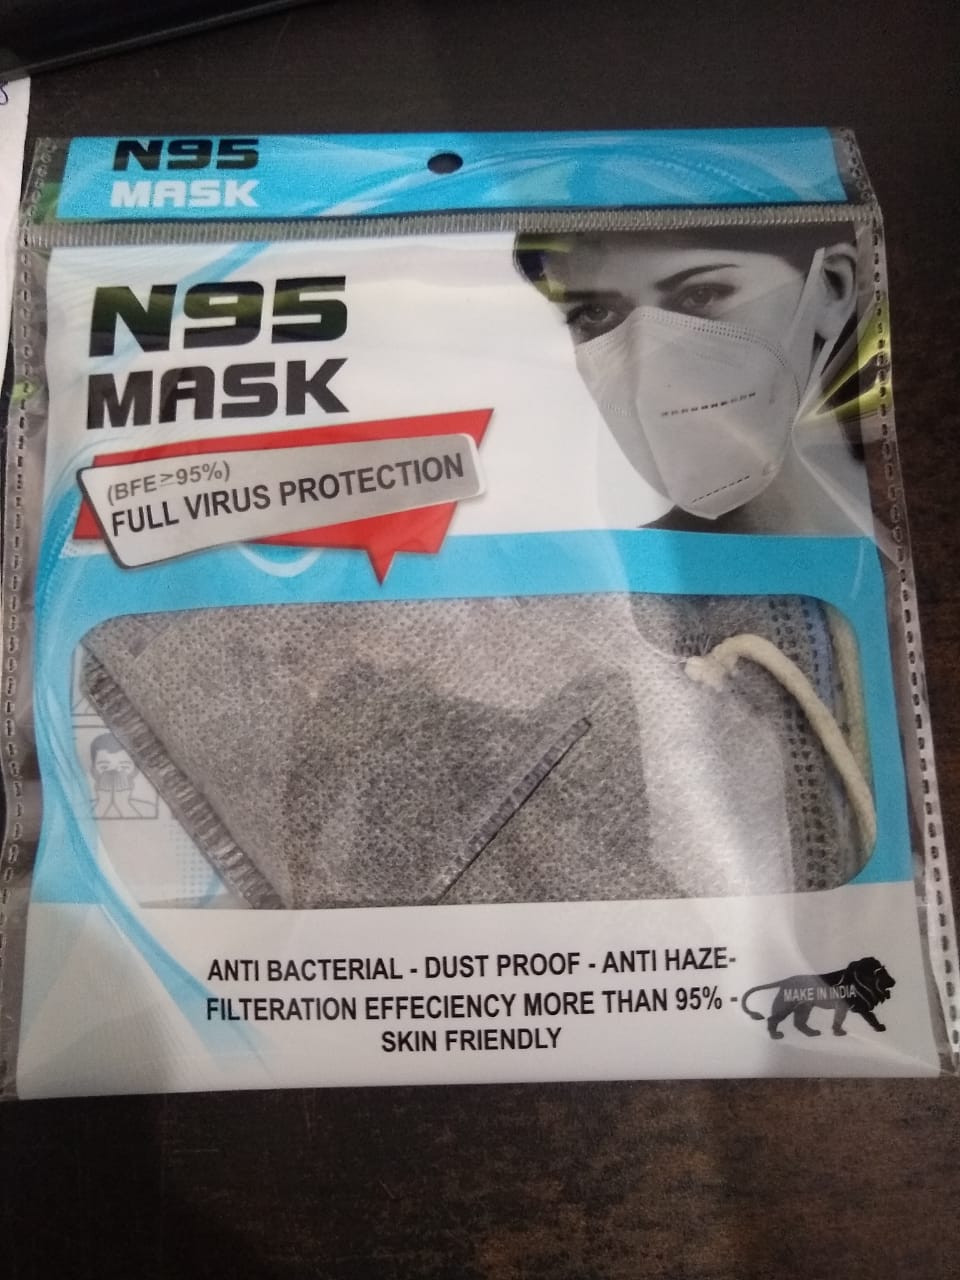 N95 Mask Packaging